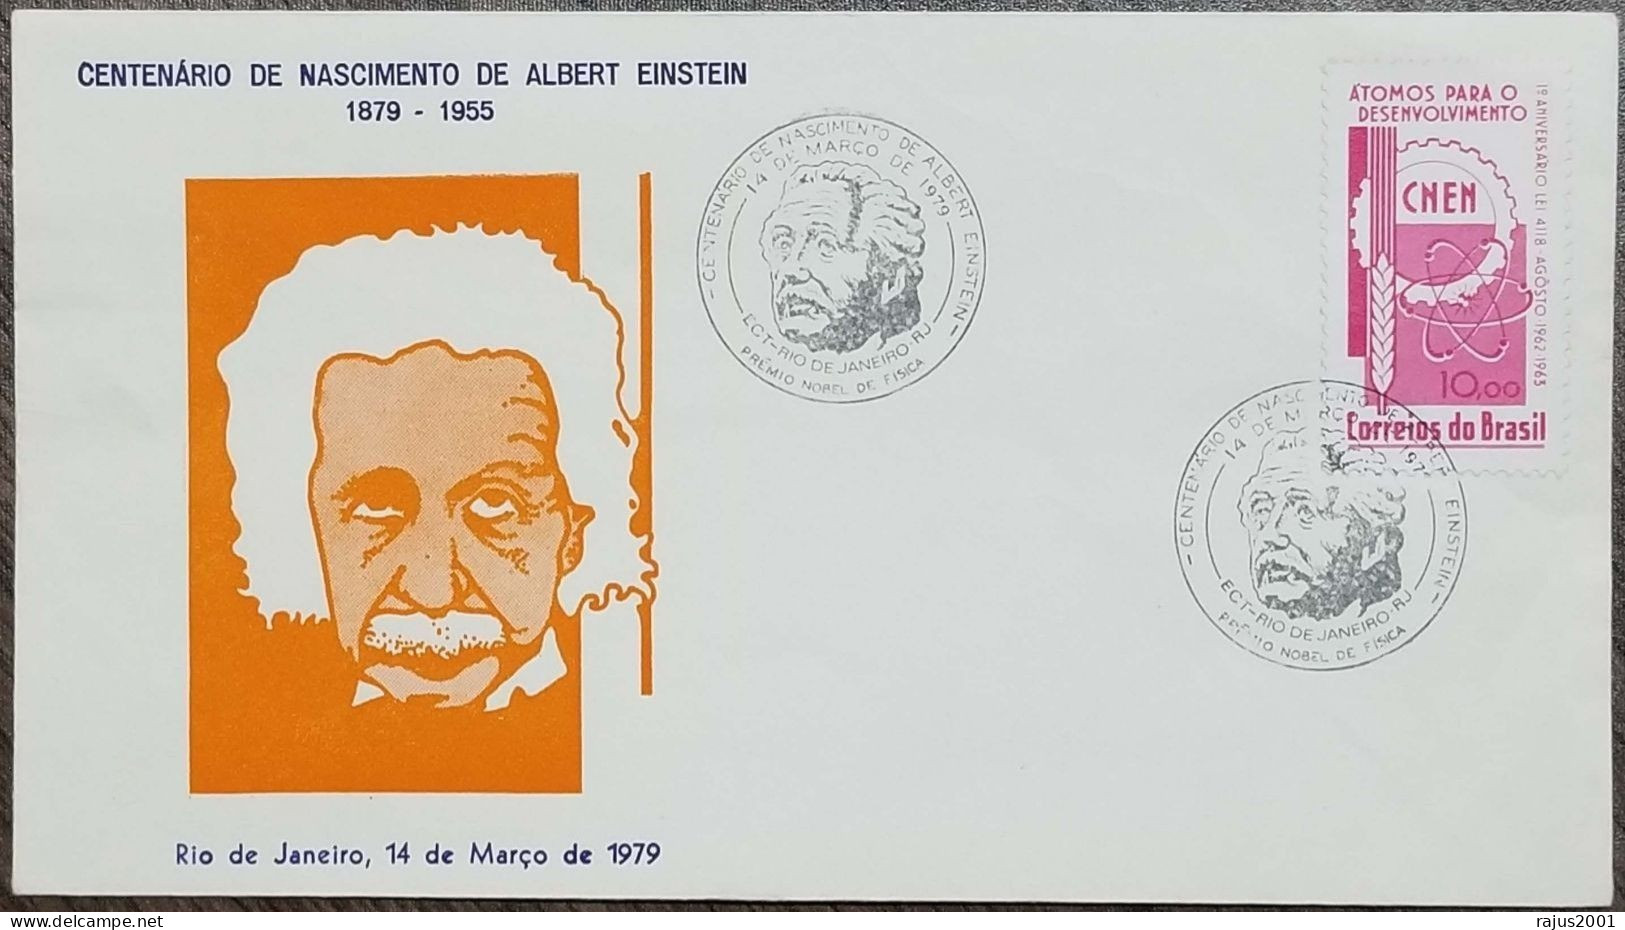 Einstein, Einstein's Theory Of Relativity, Mathematics Formula, Physics, Nobel Prize Pictorial Postmark, Brazil FDC - Albert Einstein